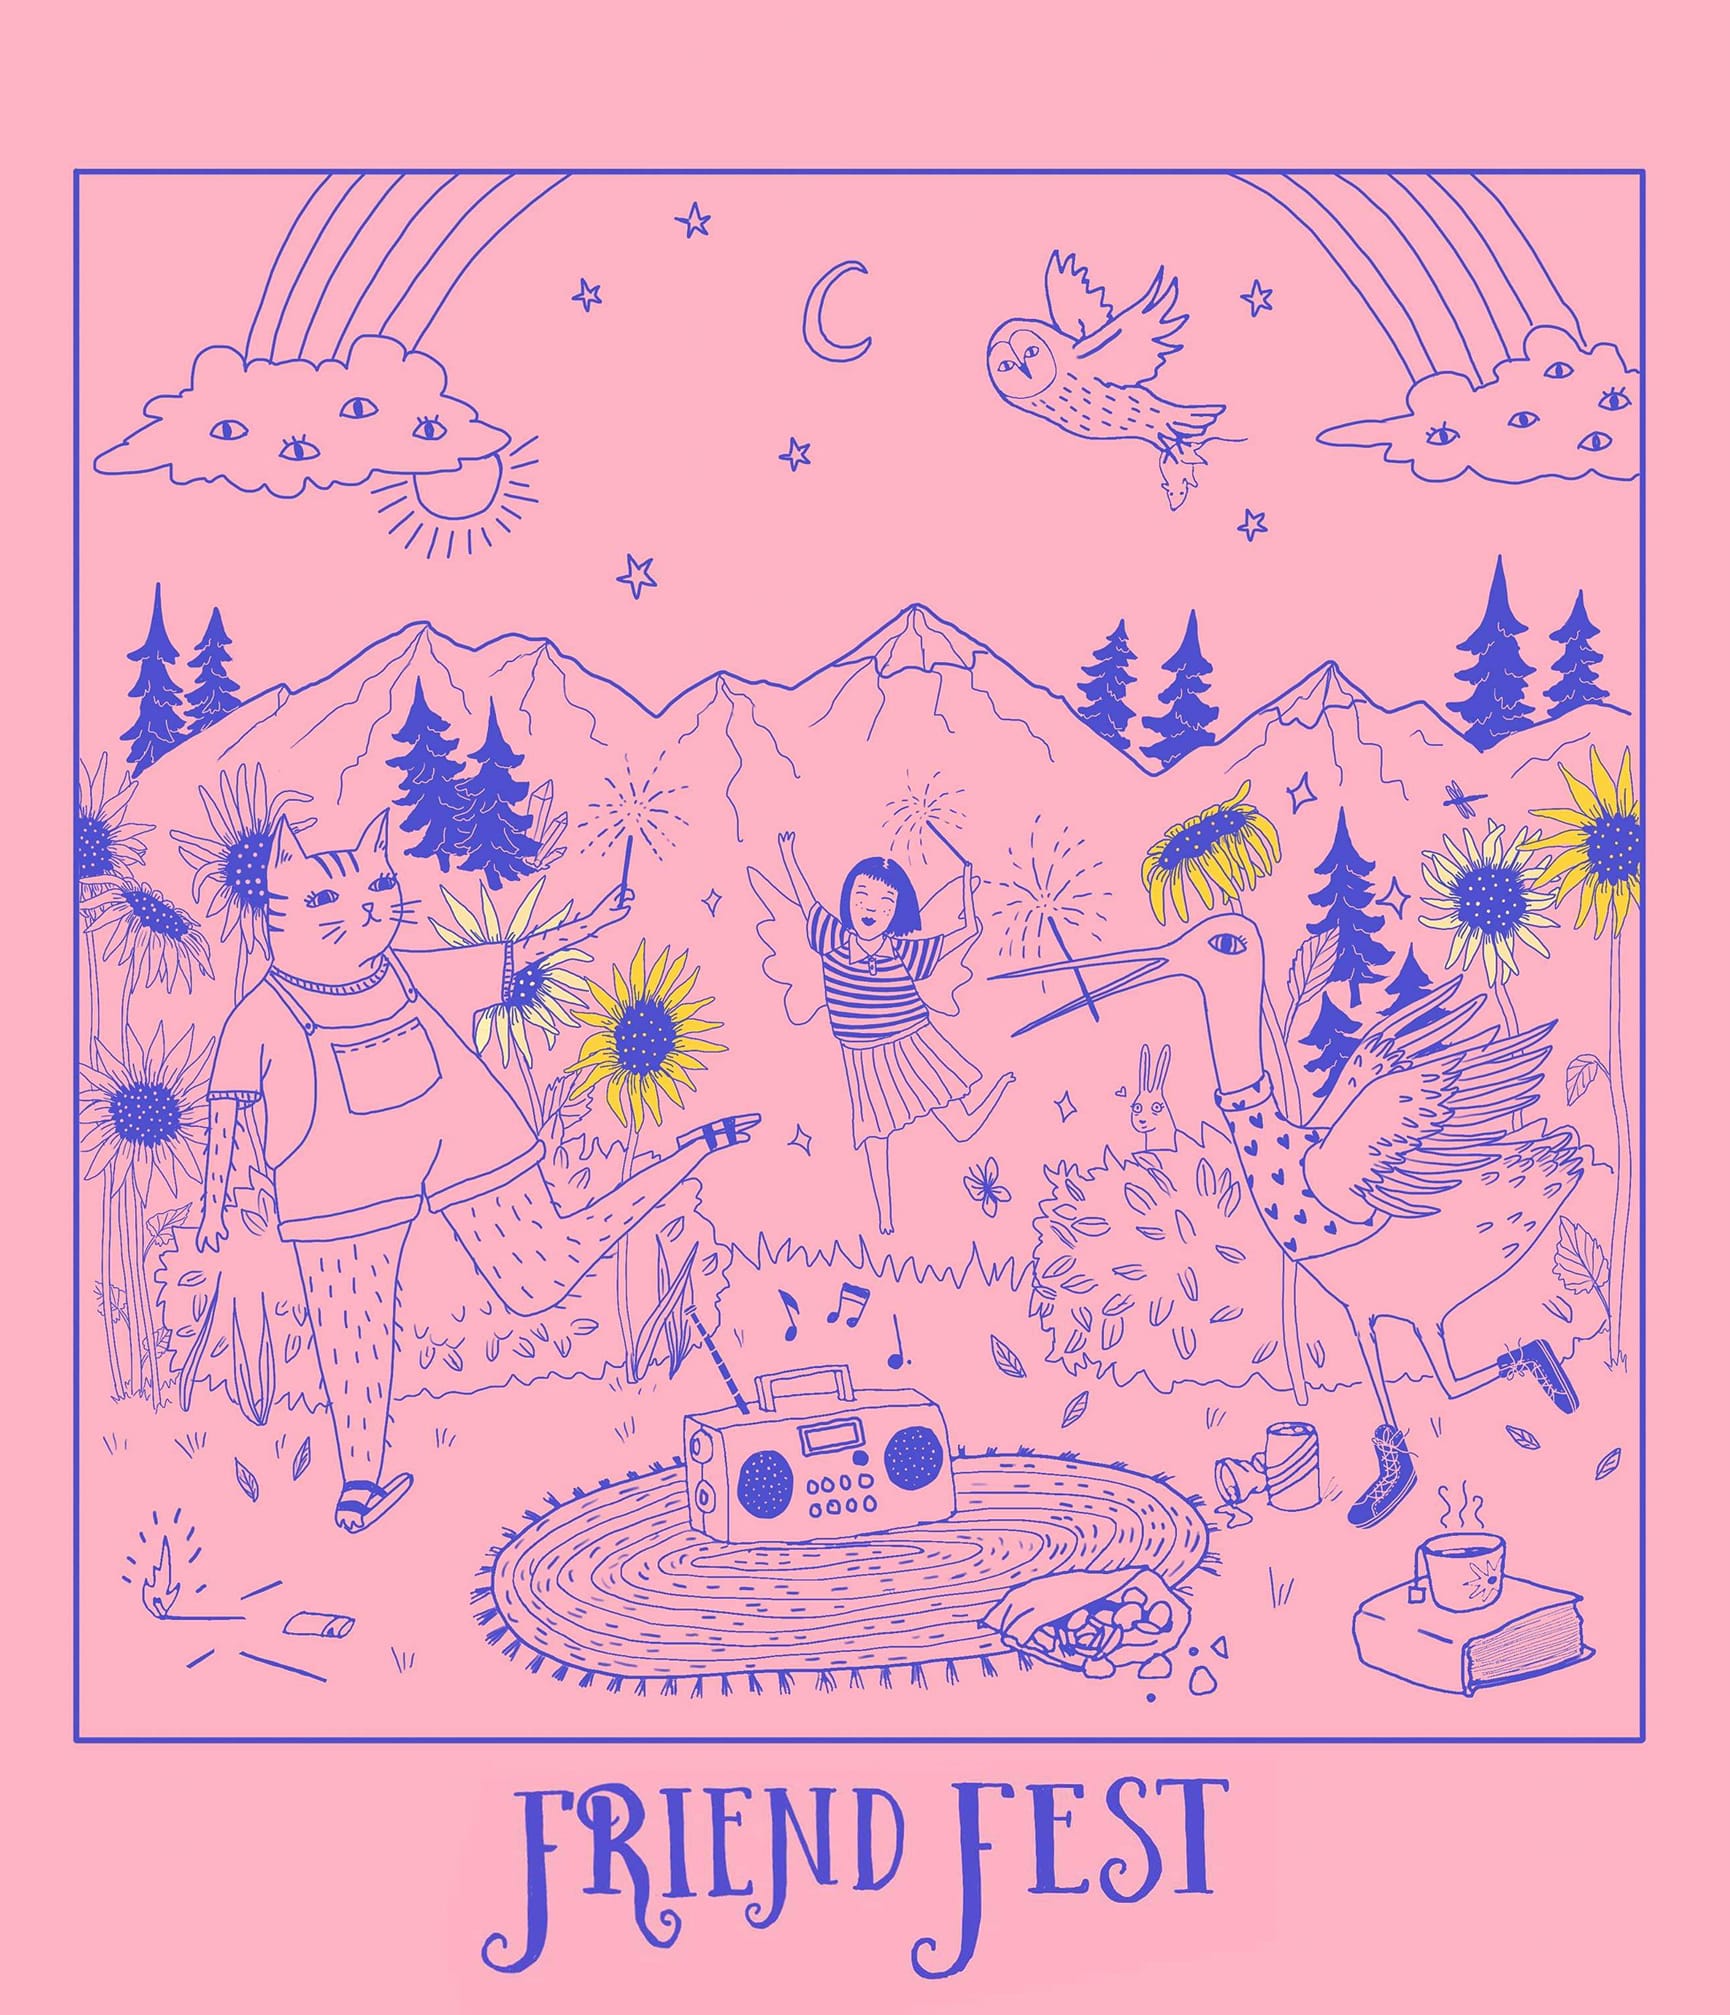 08/31/2019, Seattle, Friend Fest, Werewolf Vacation